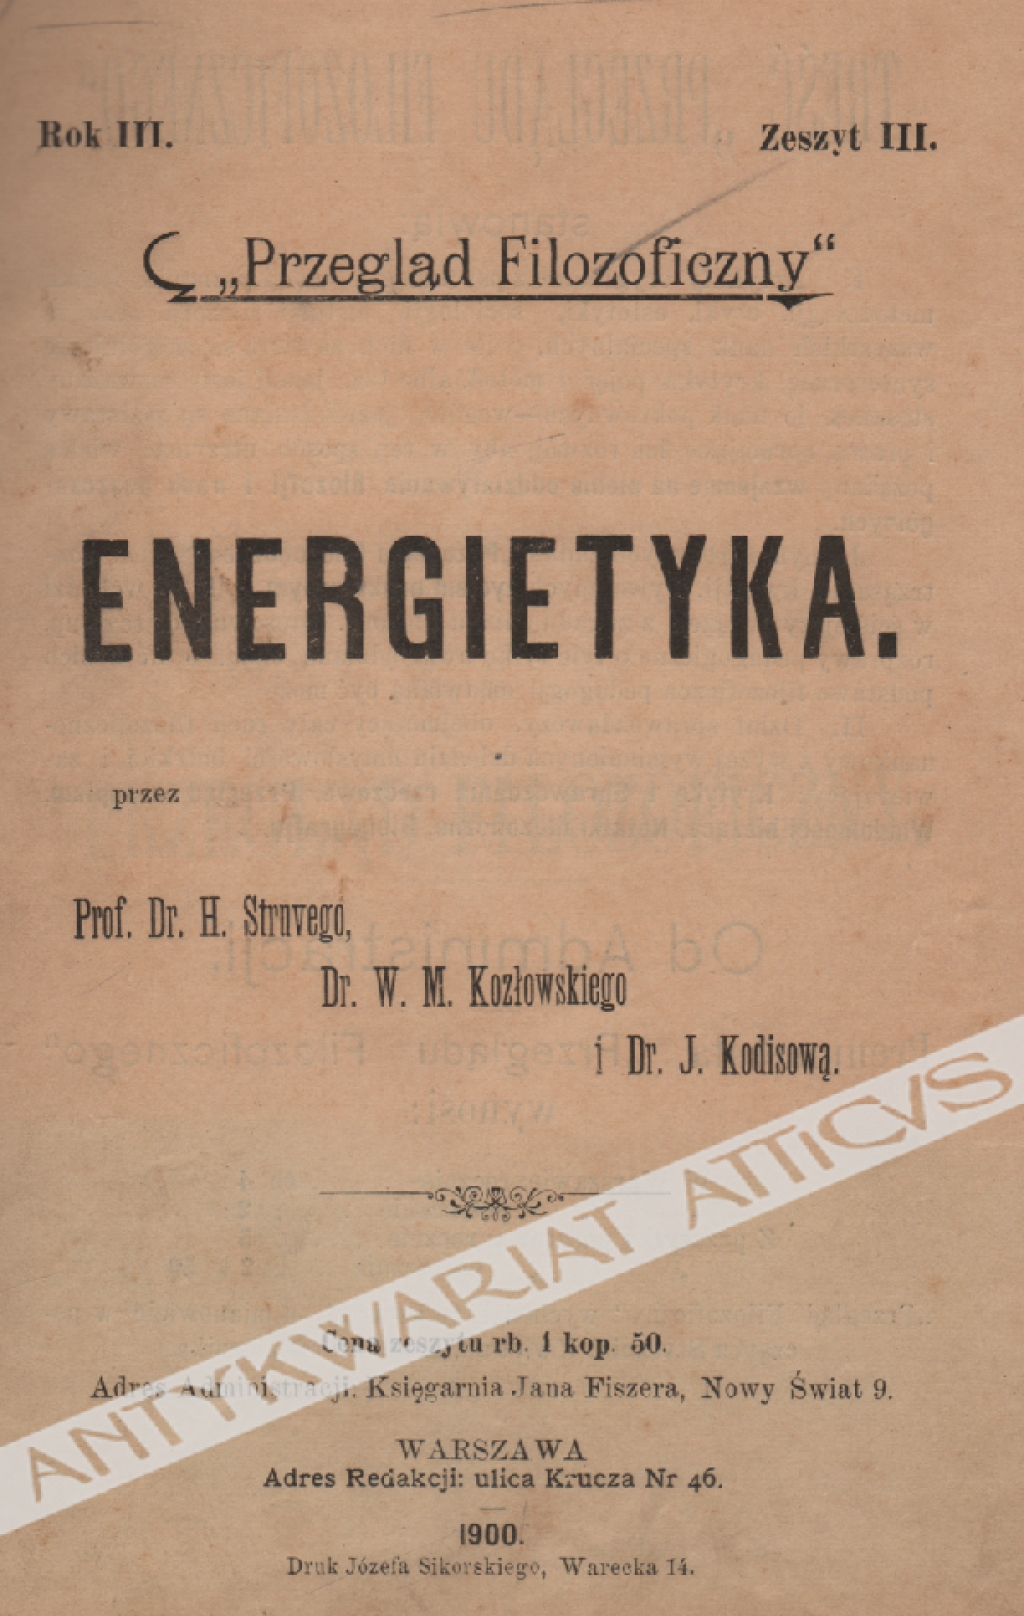 Przegląd Filozoficzny. Rok III (1900) - zeszyt III. Energietyka.